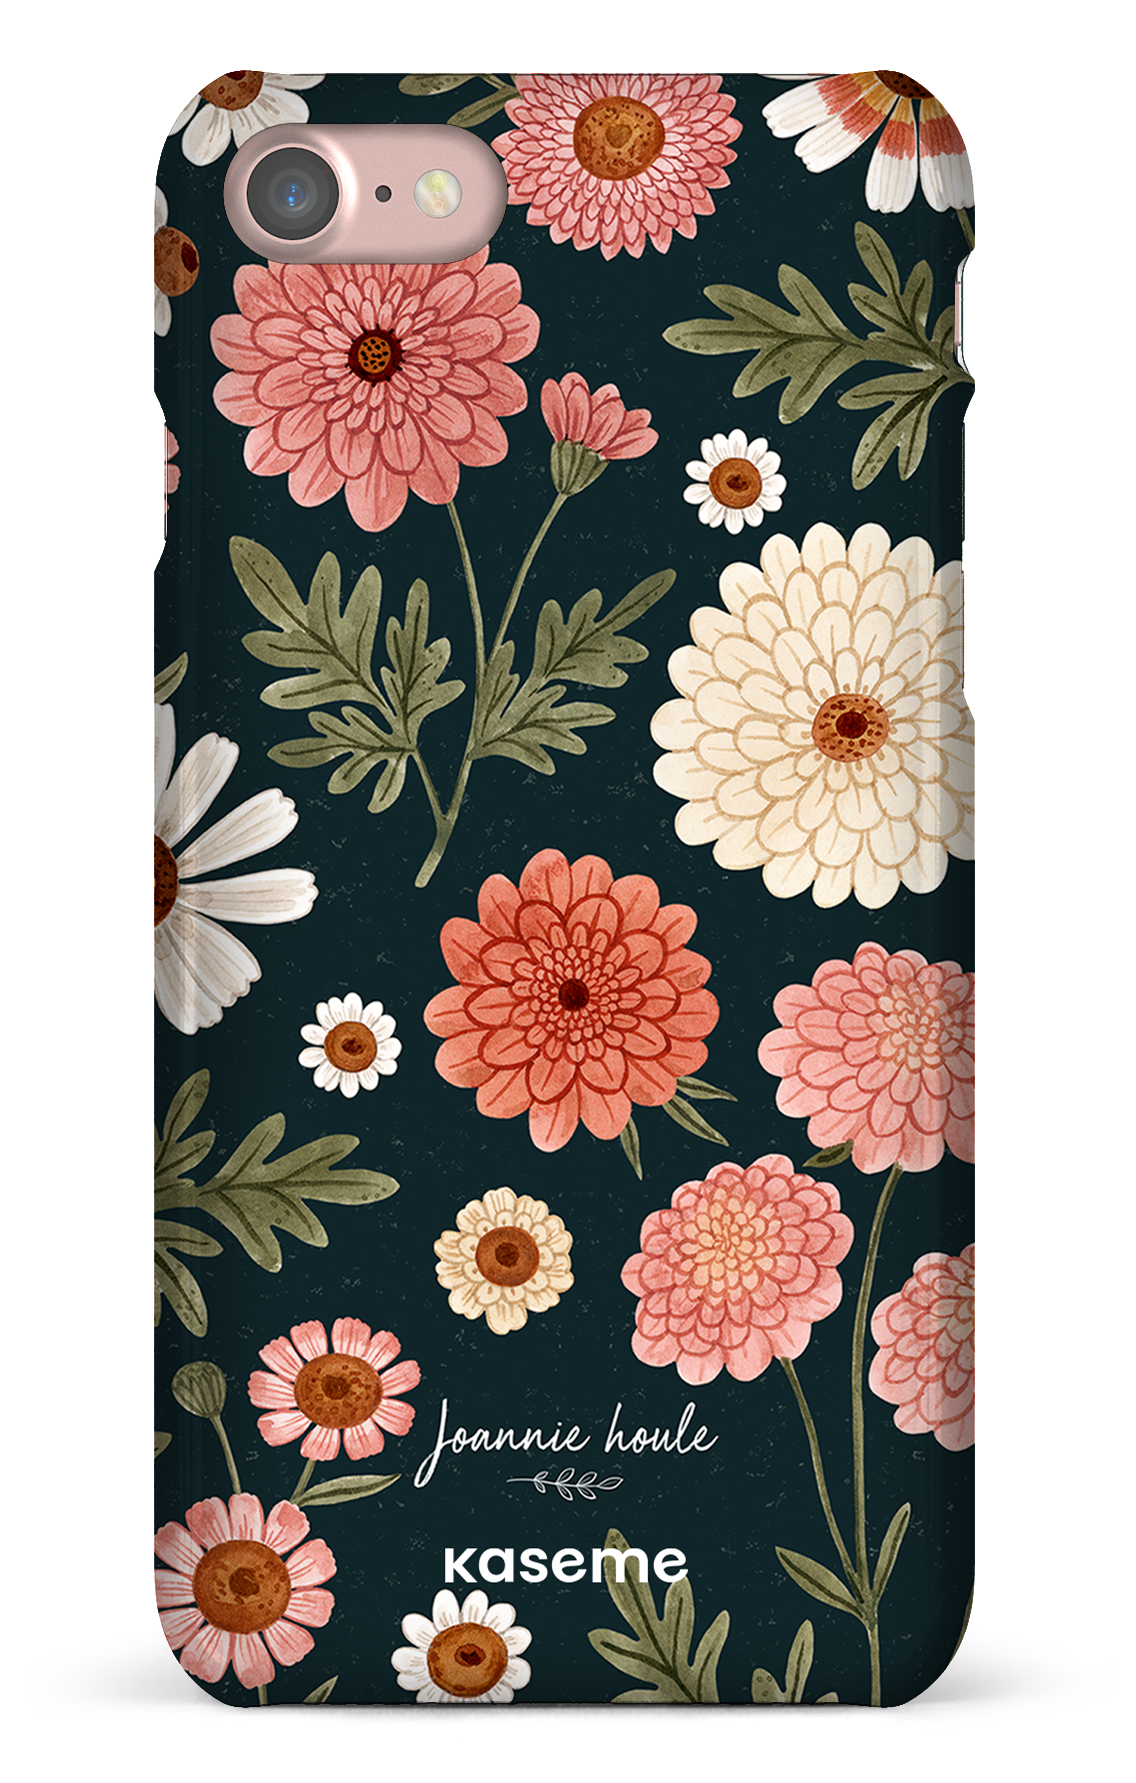 Chrysanthemums by Joannie Houle - iPhone 7